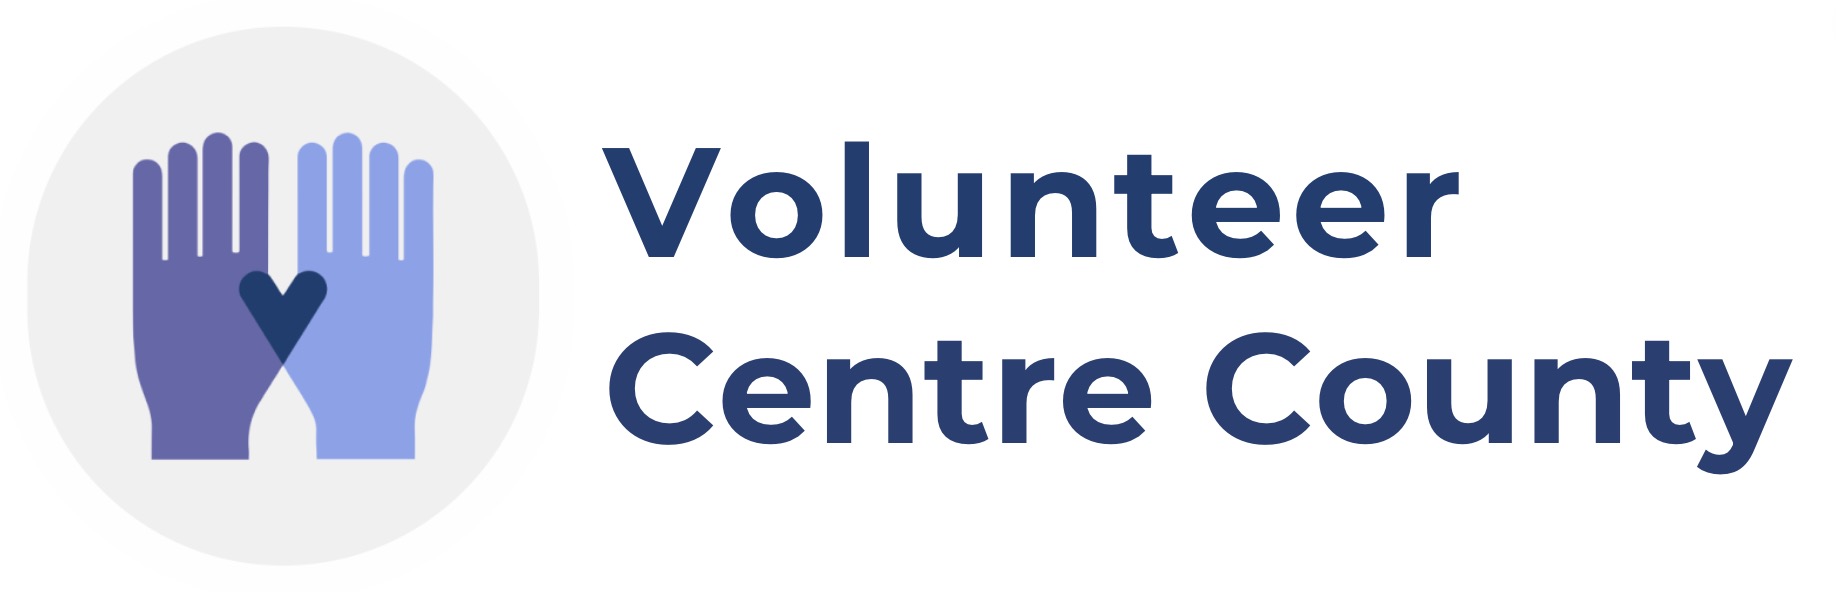 Volunteer Centre County Logo Link